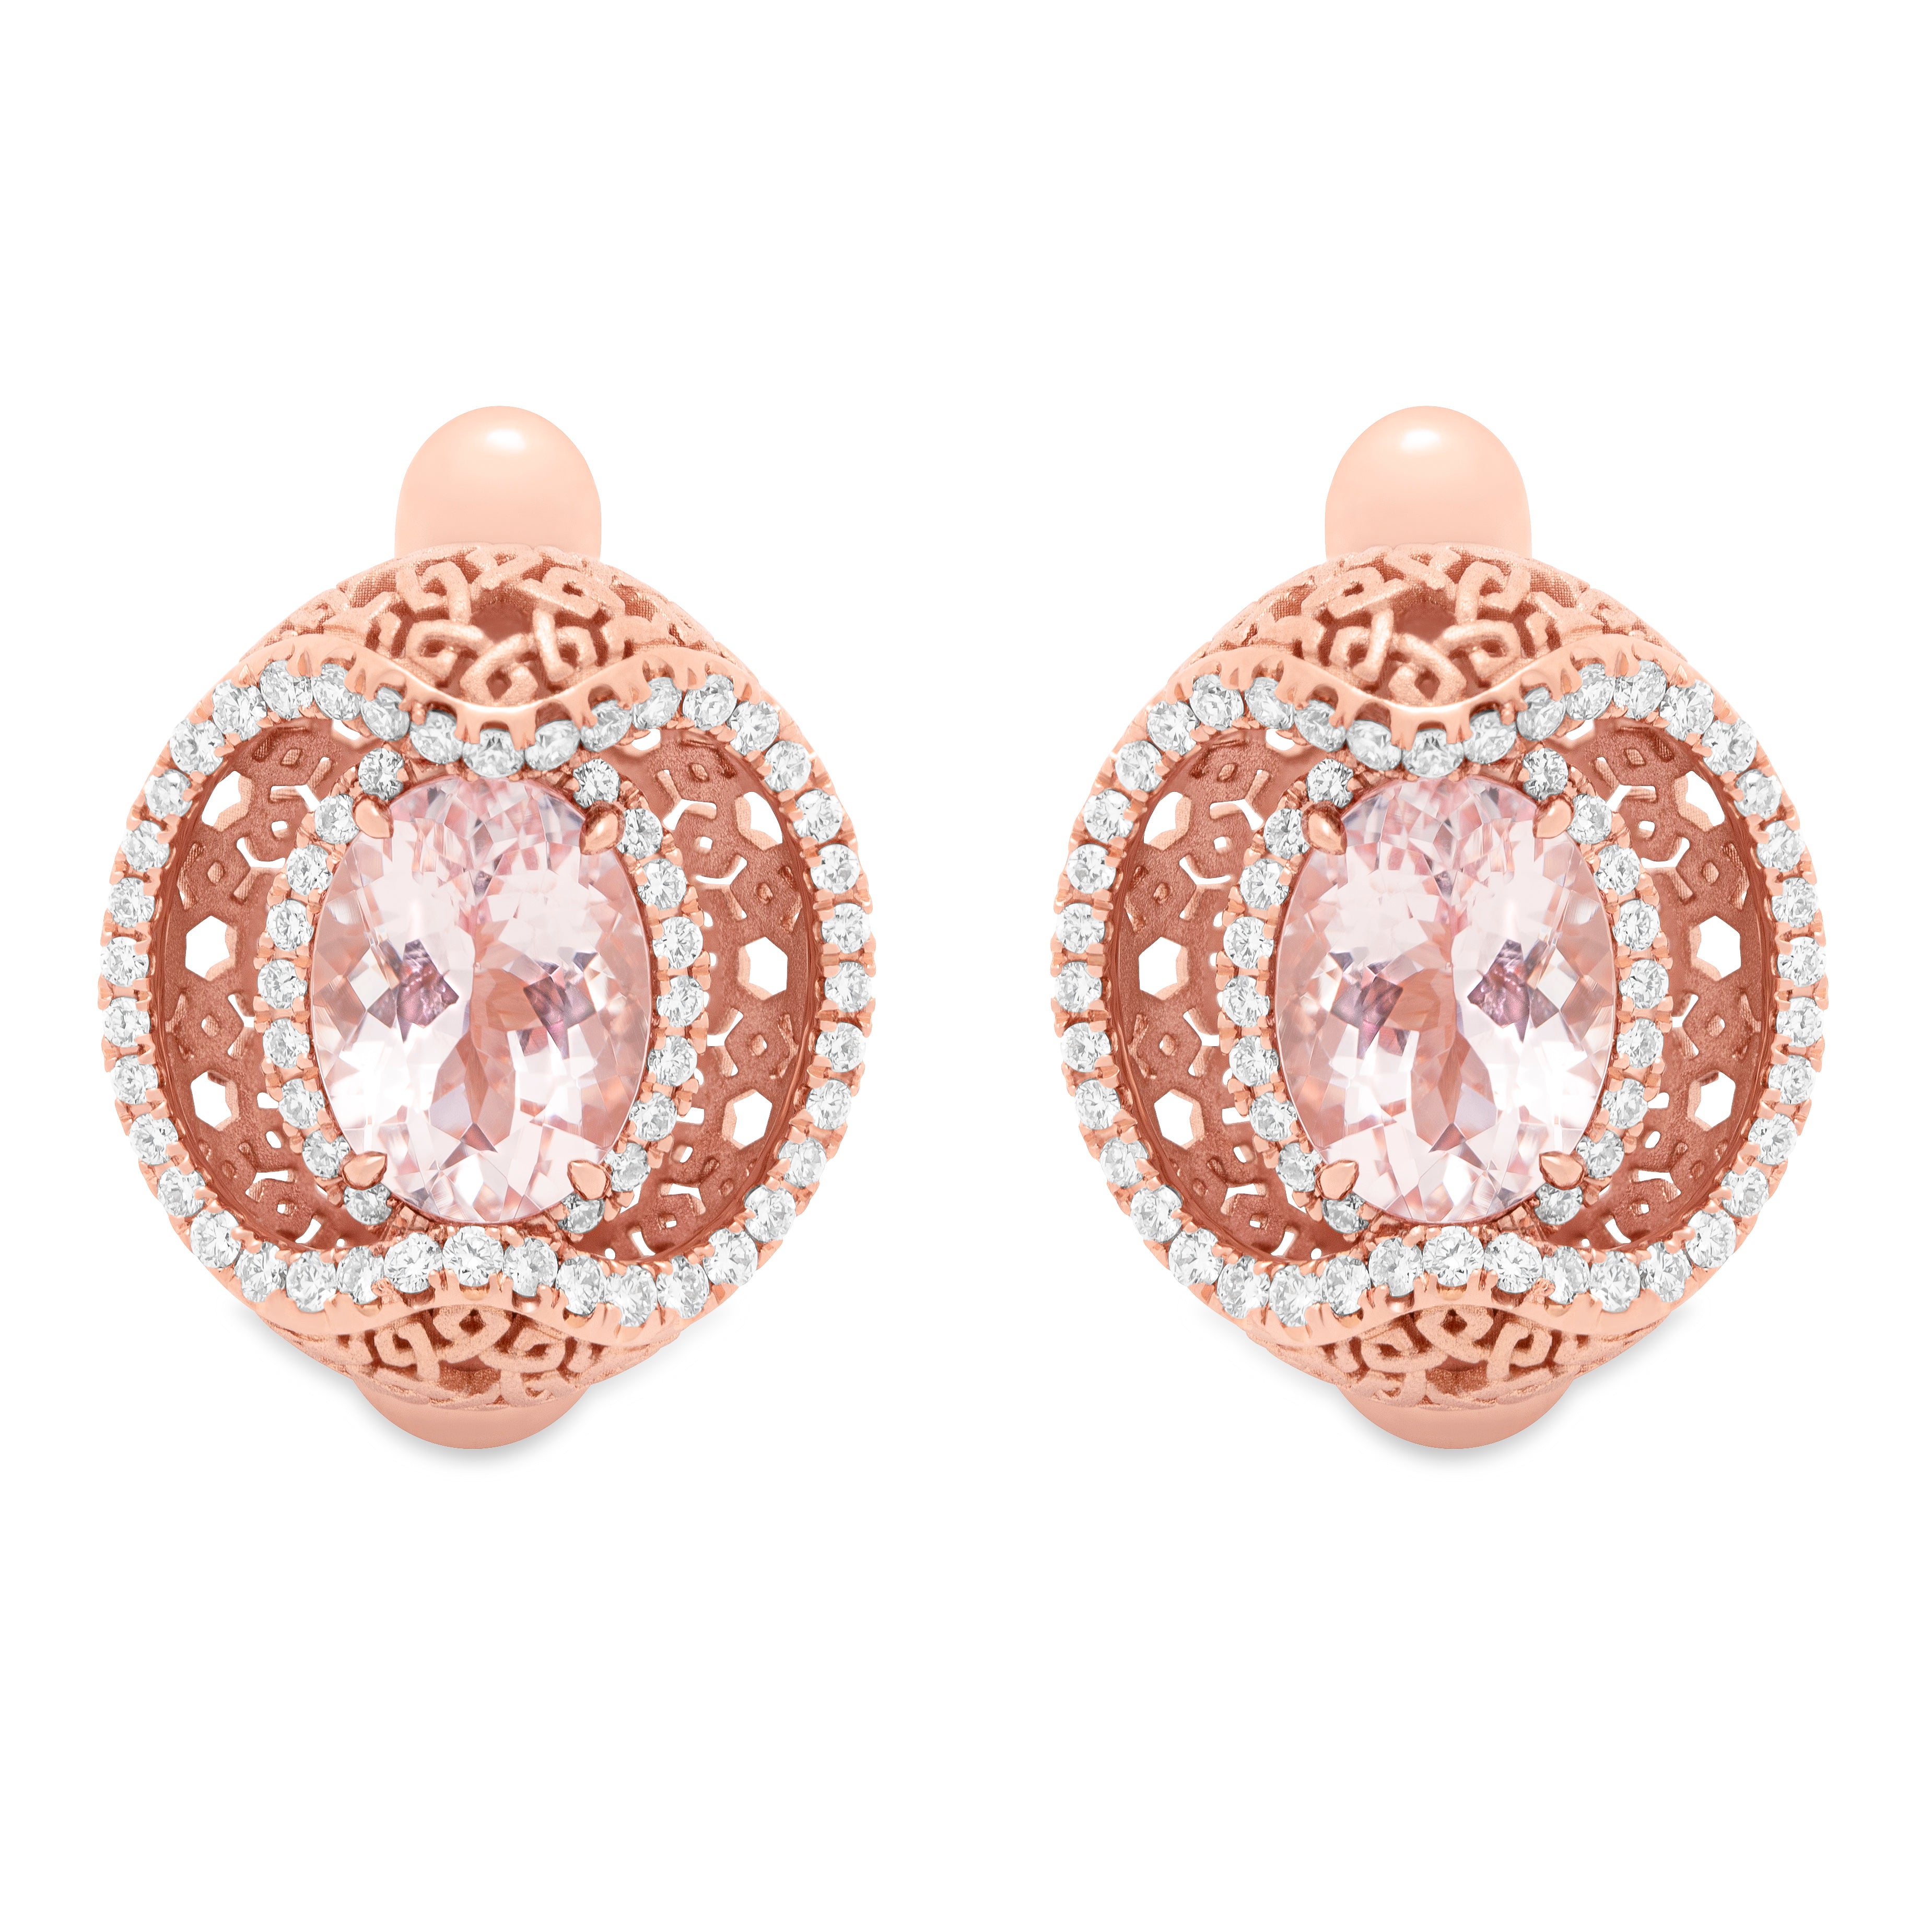 E 0144-11, 18K Rose Gold, Morganite, Diamonds Earrings